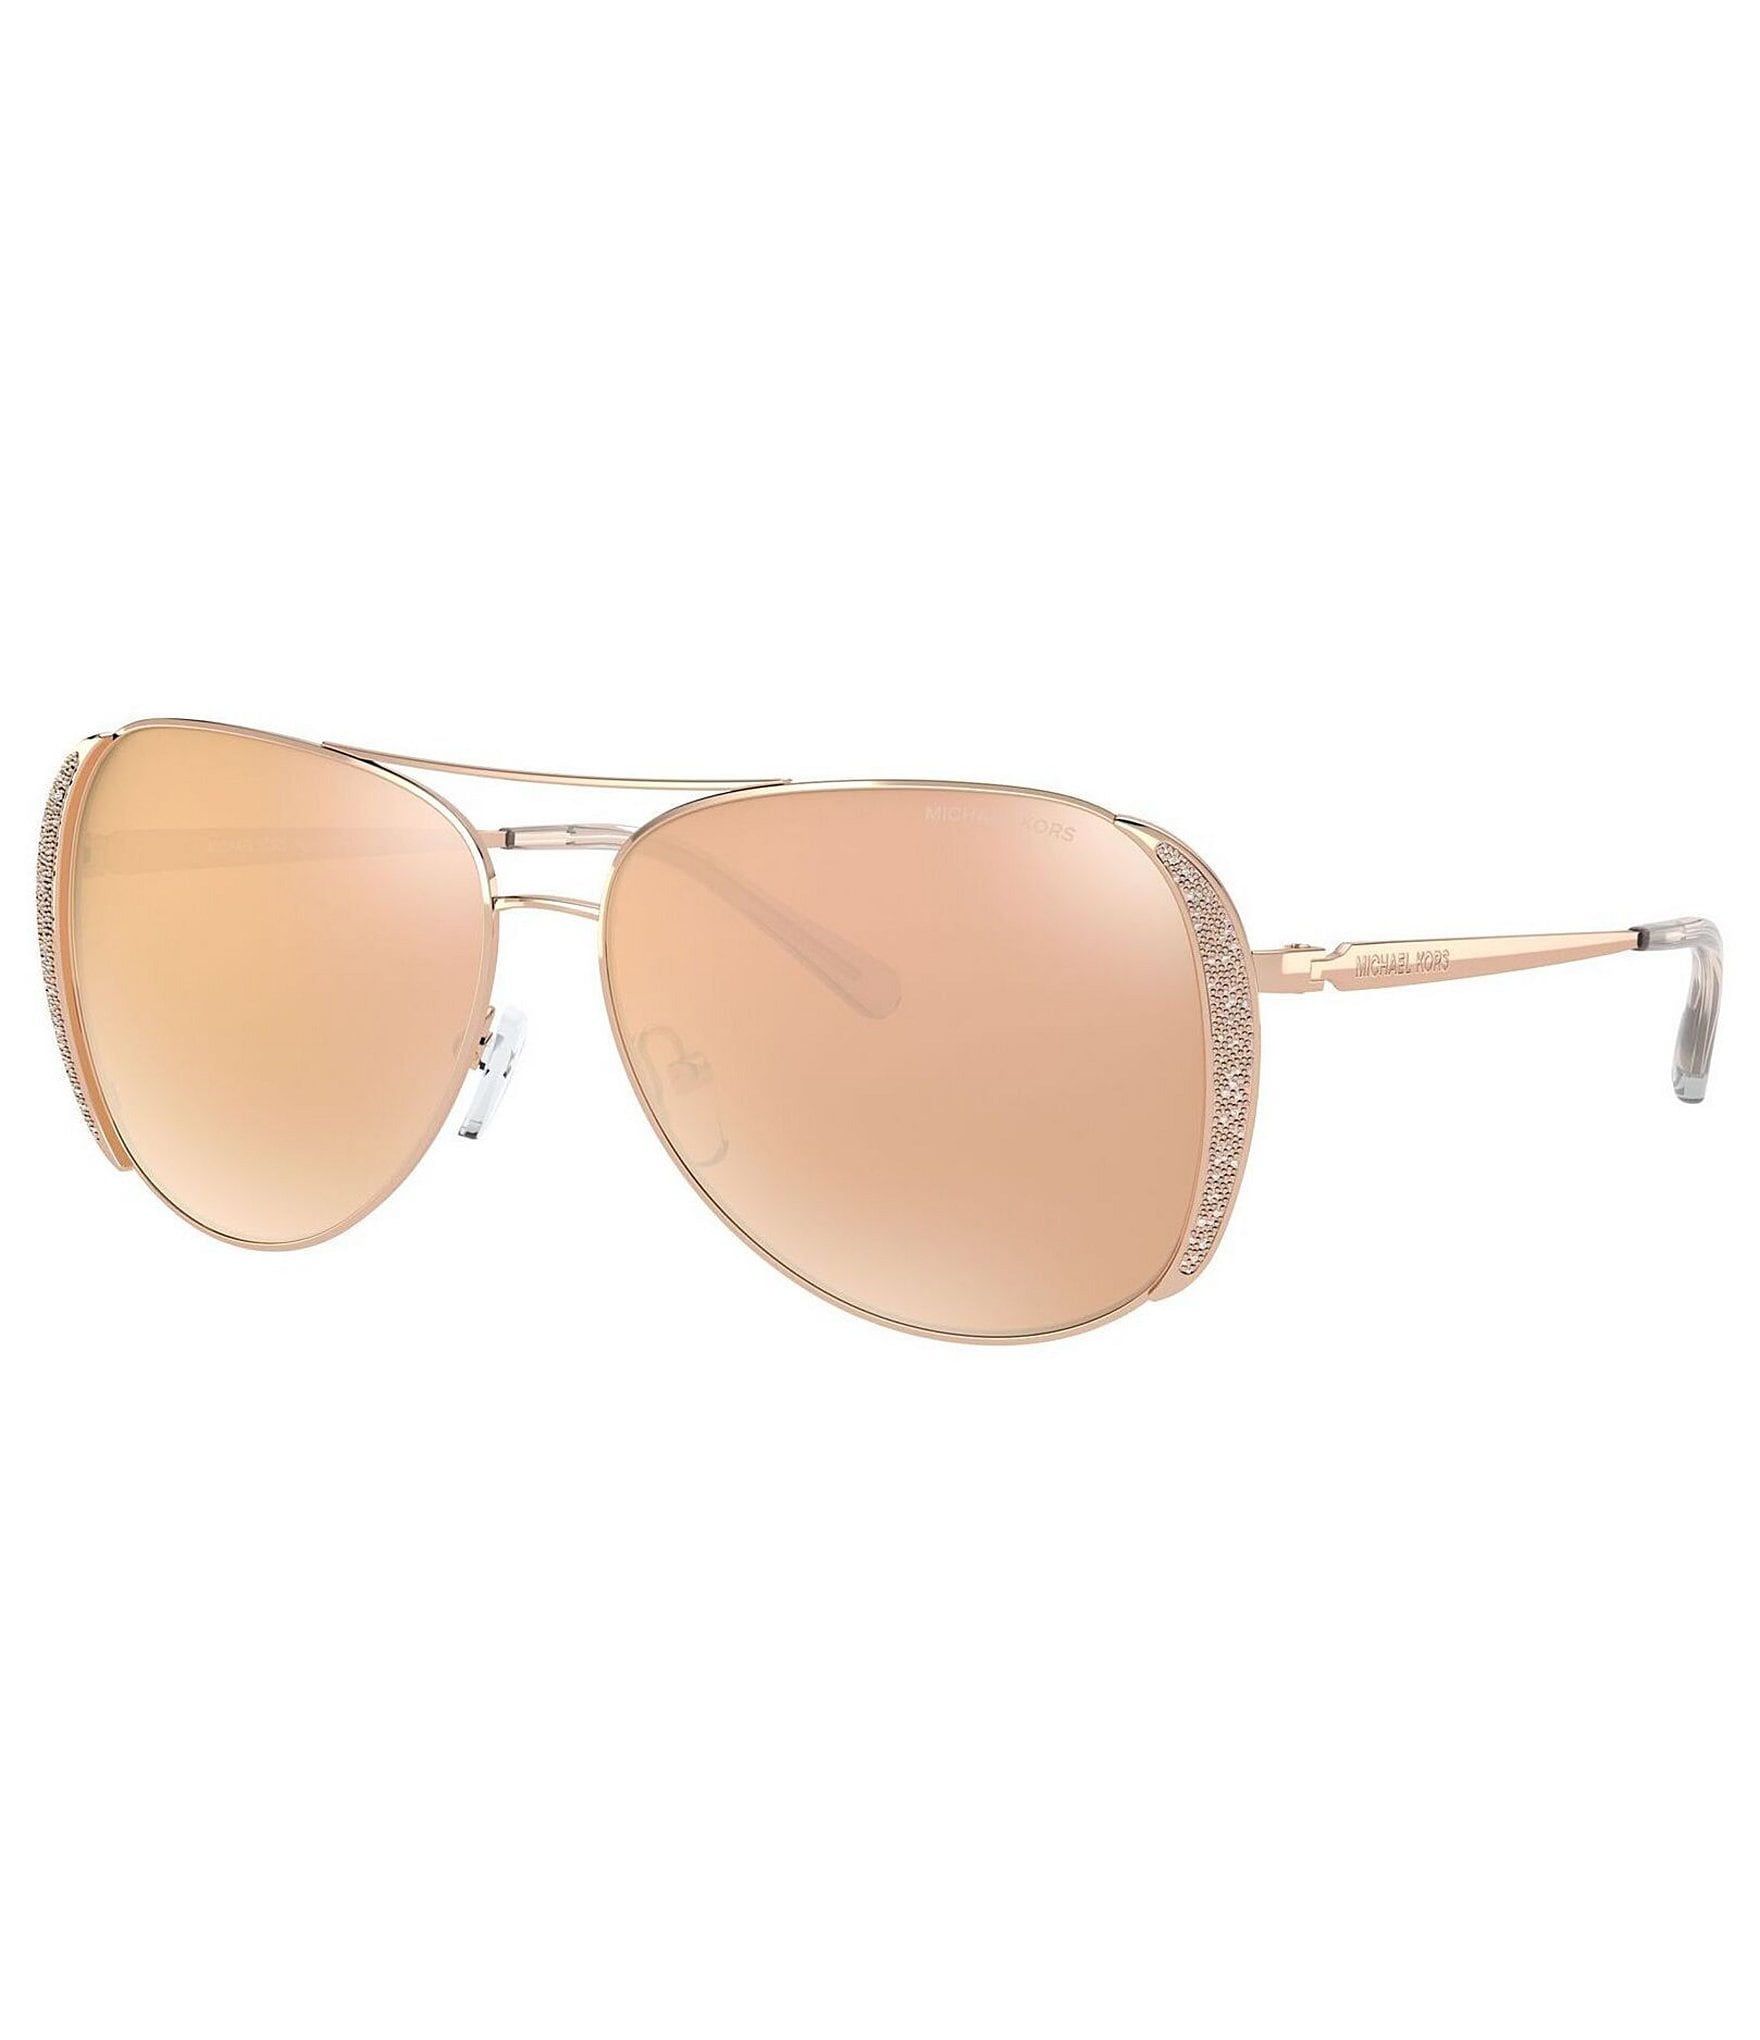 Michael Kors Women S Aviator 58mm Mirrored Sunglasses Dillard S